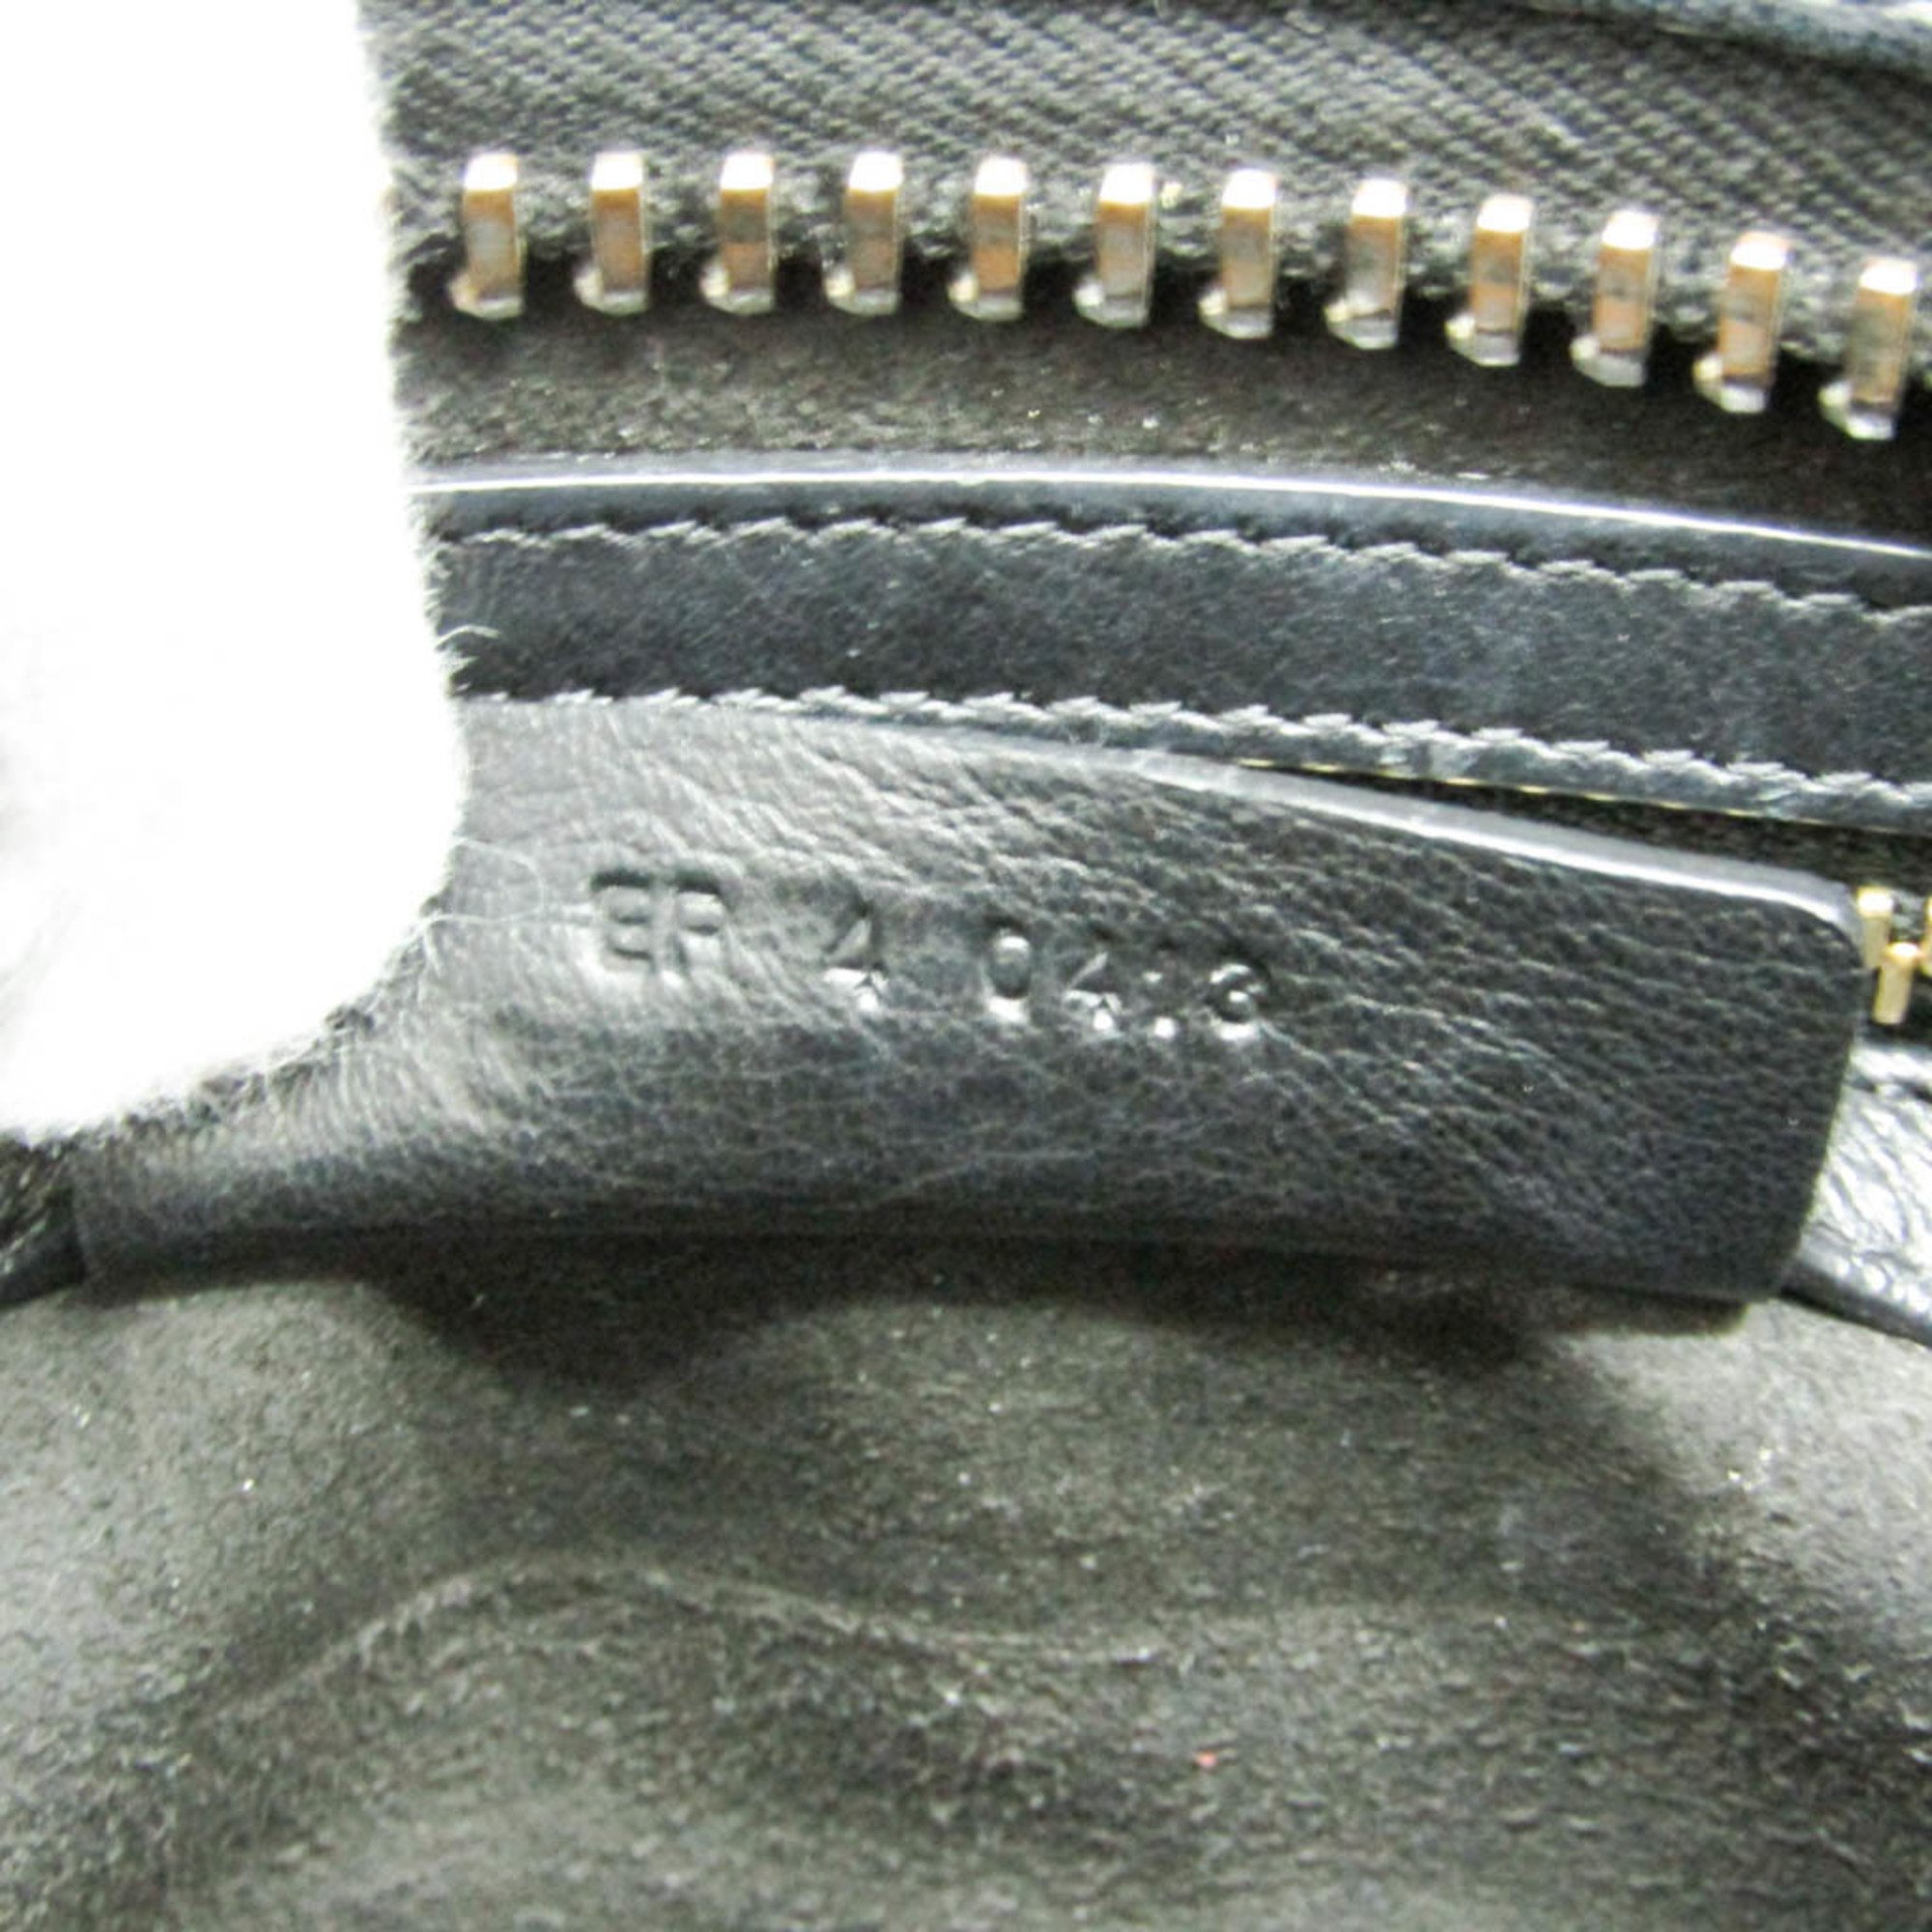 Givenchy Lucrezia EF 4 0413 Women's Leather Handbag,Shoulder Bag Black